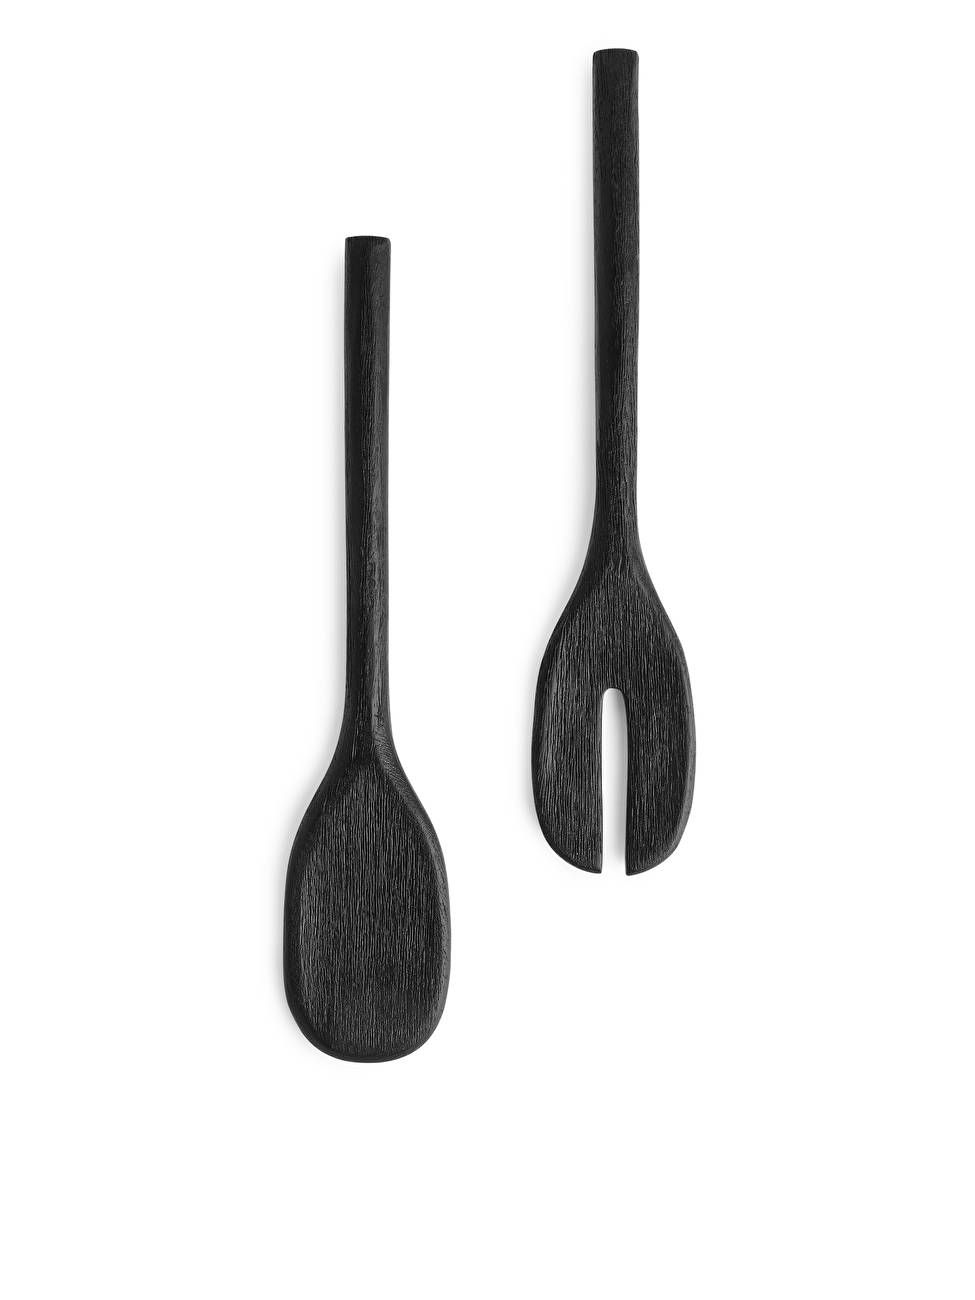 Wooden Serving Tools - Black - ARKET GB | ARKET